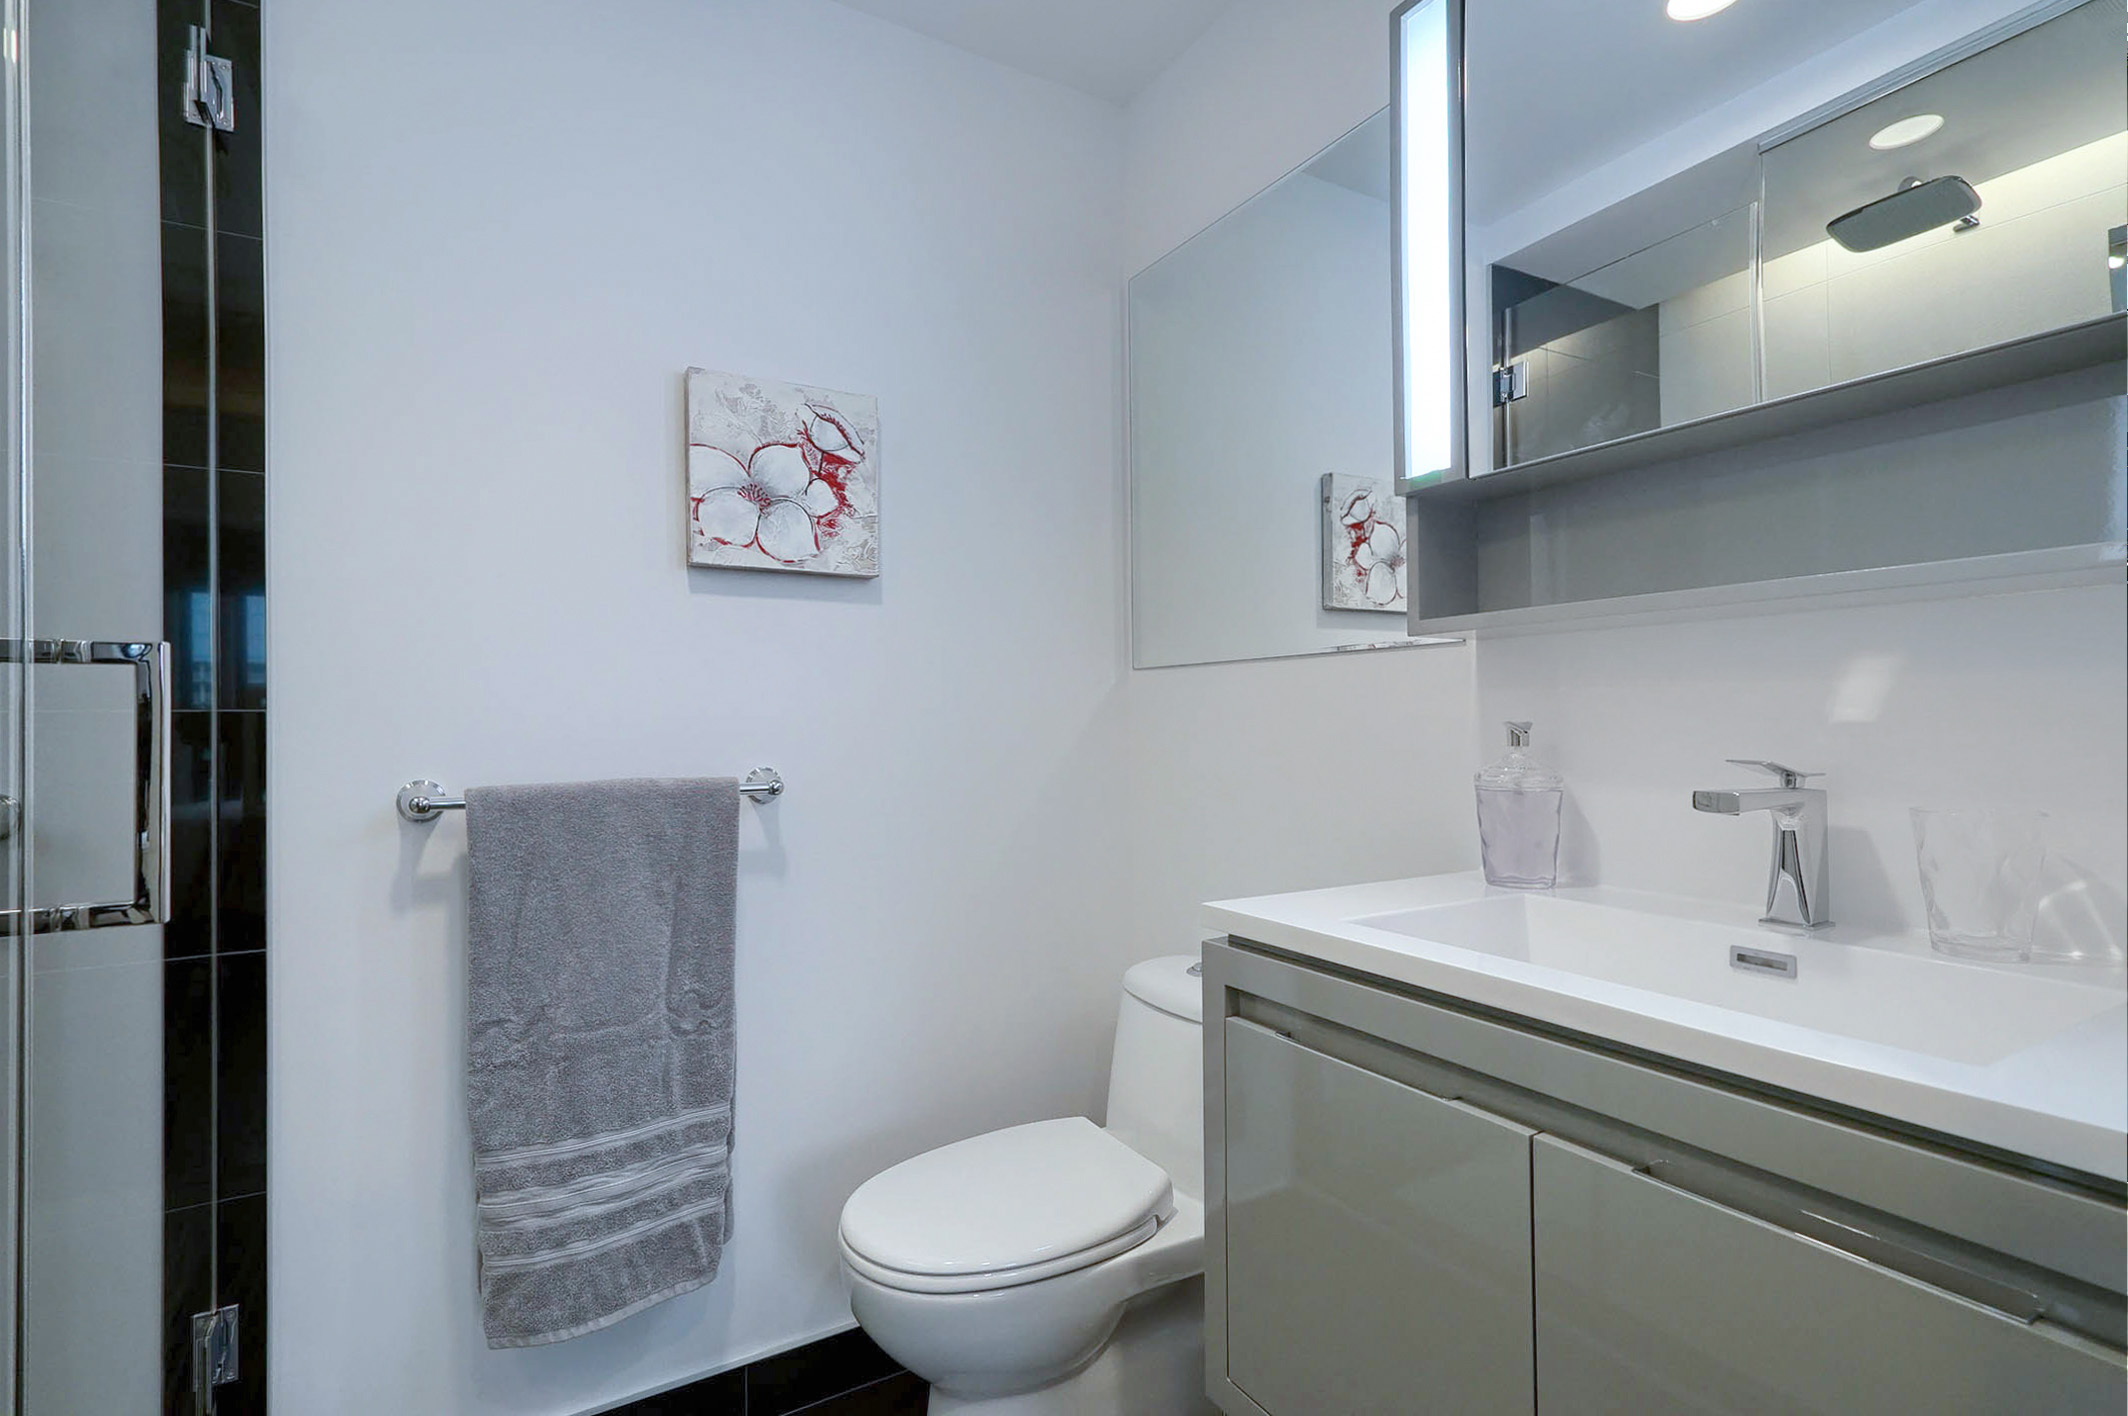 Vue de la salle de bain montrant le lavabo surdimensionné et la toilette. Luxe moderne dans cet appartement de logement exécutif meublé à Montréal